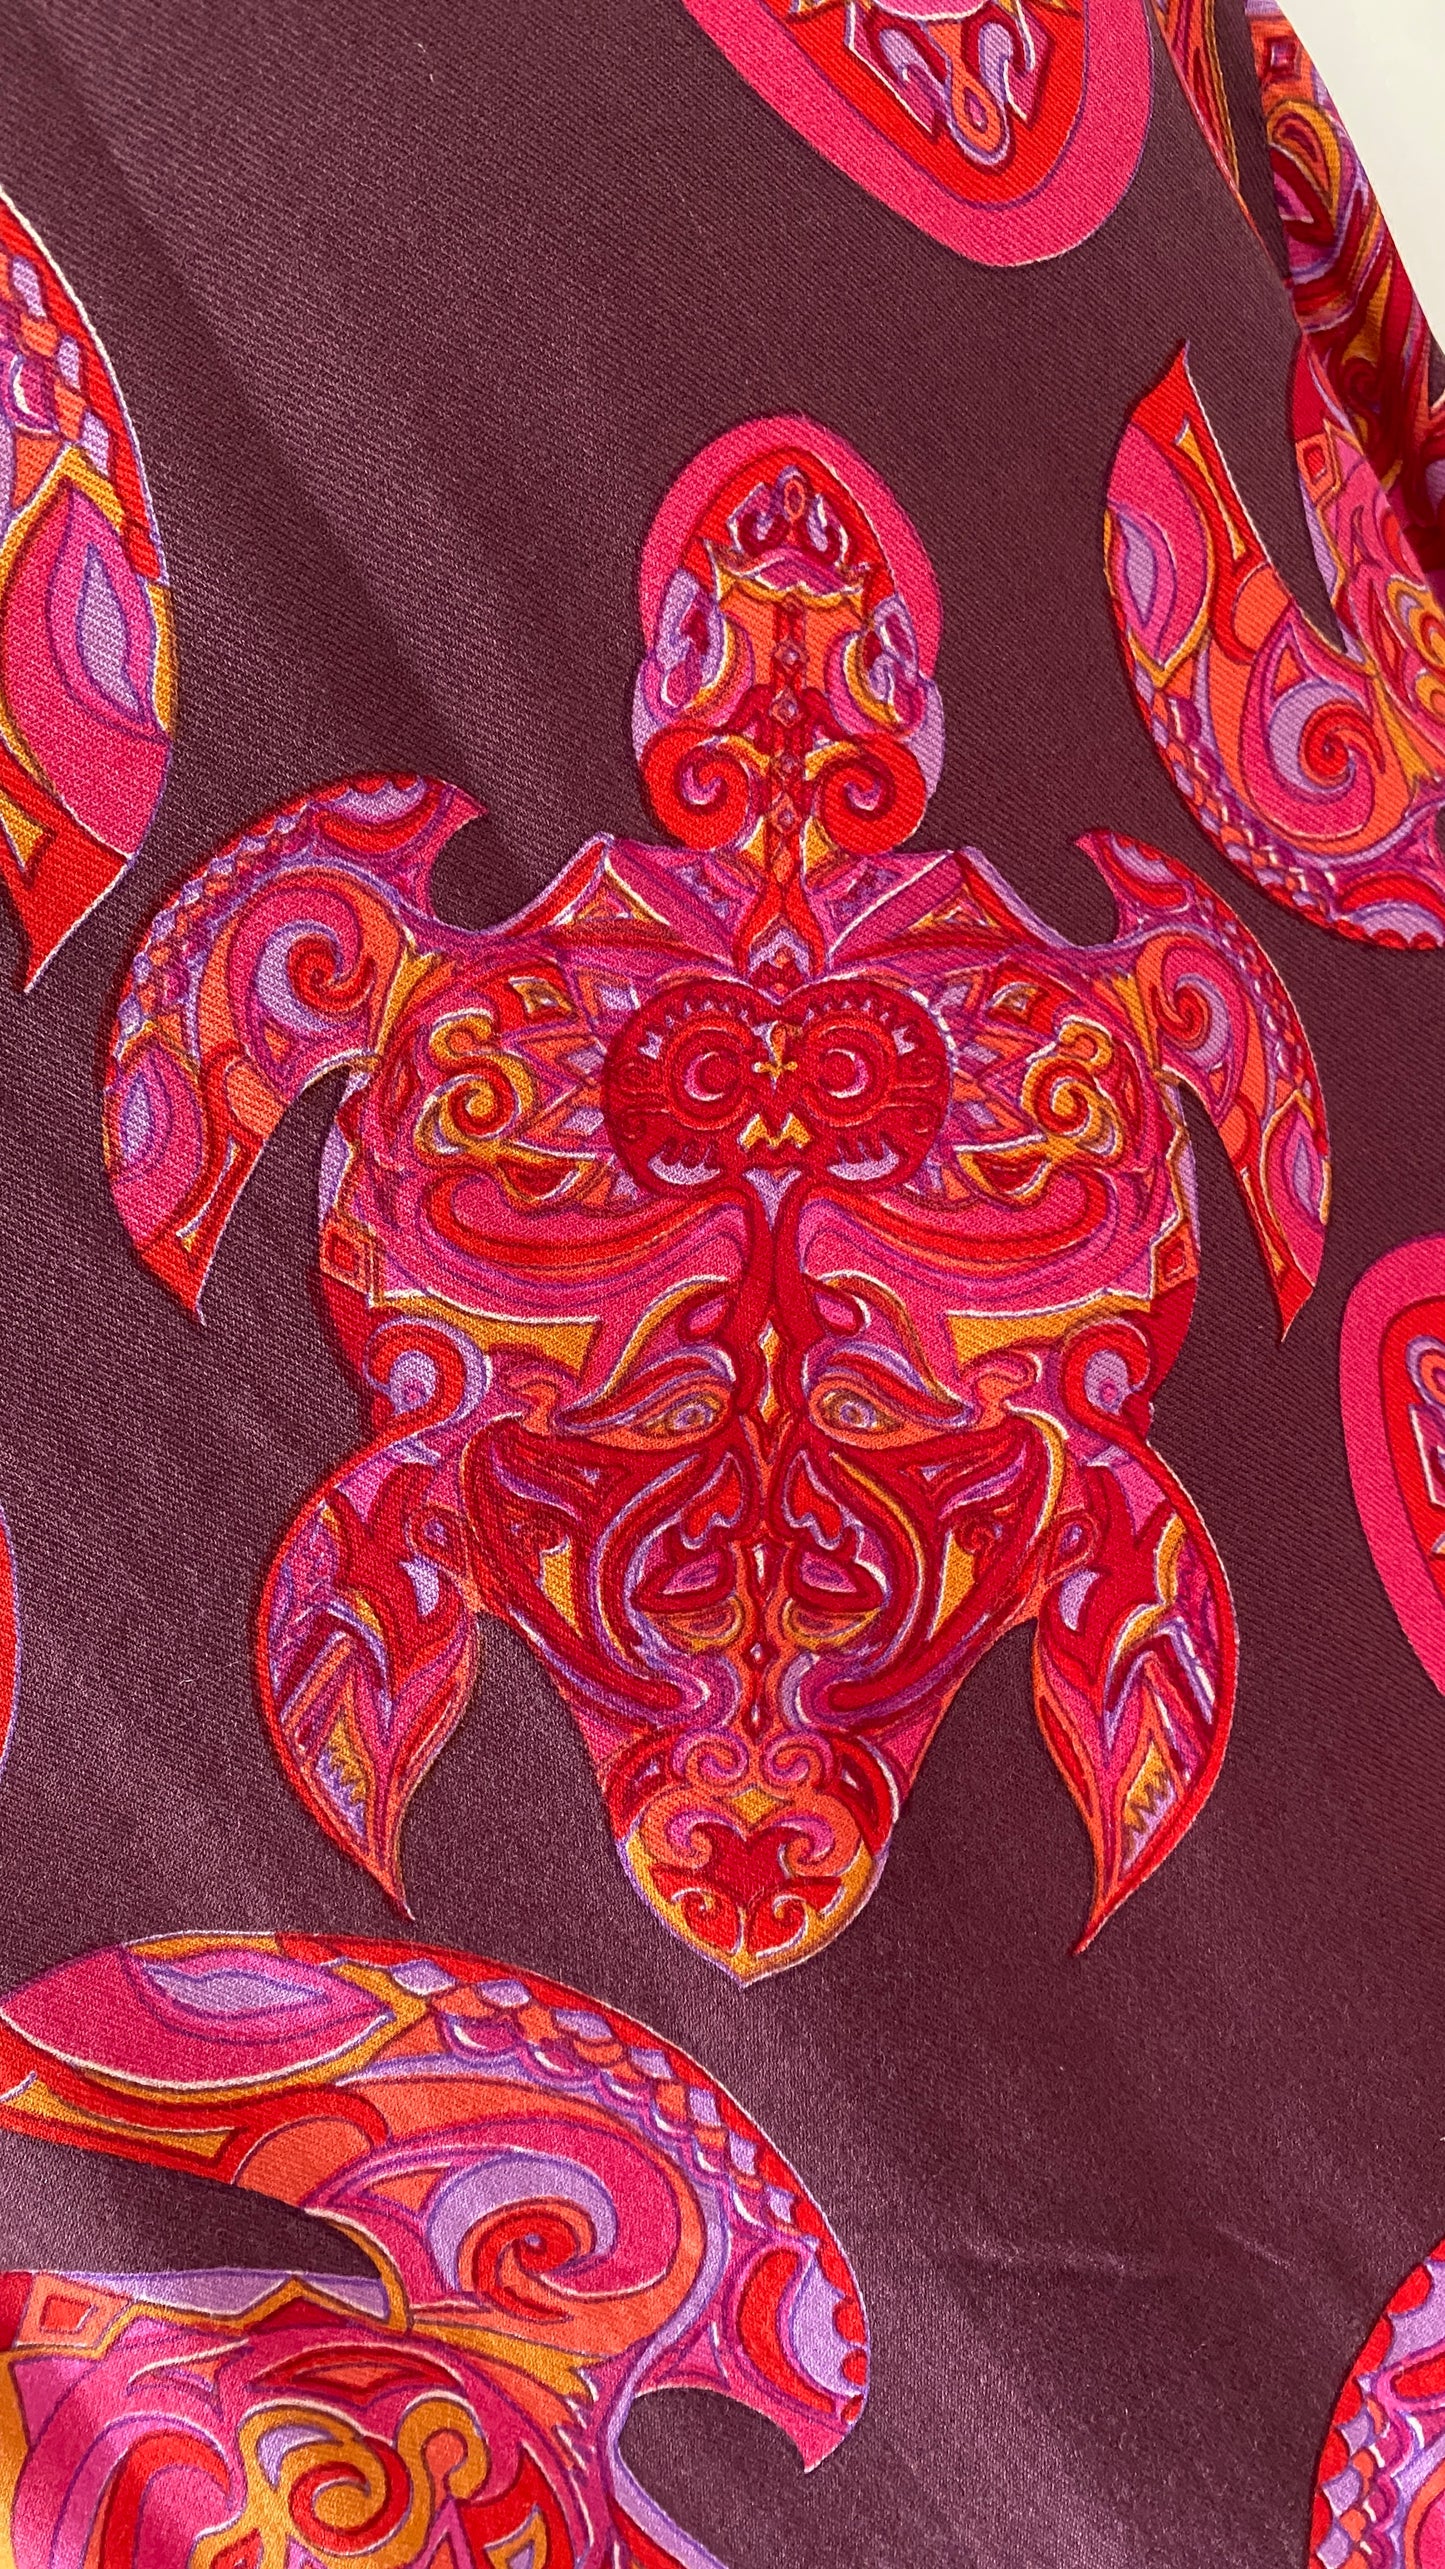 MAORI TURTLES Seiden-Hemdbluse, pink auf pflaume, limited